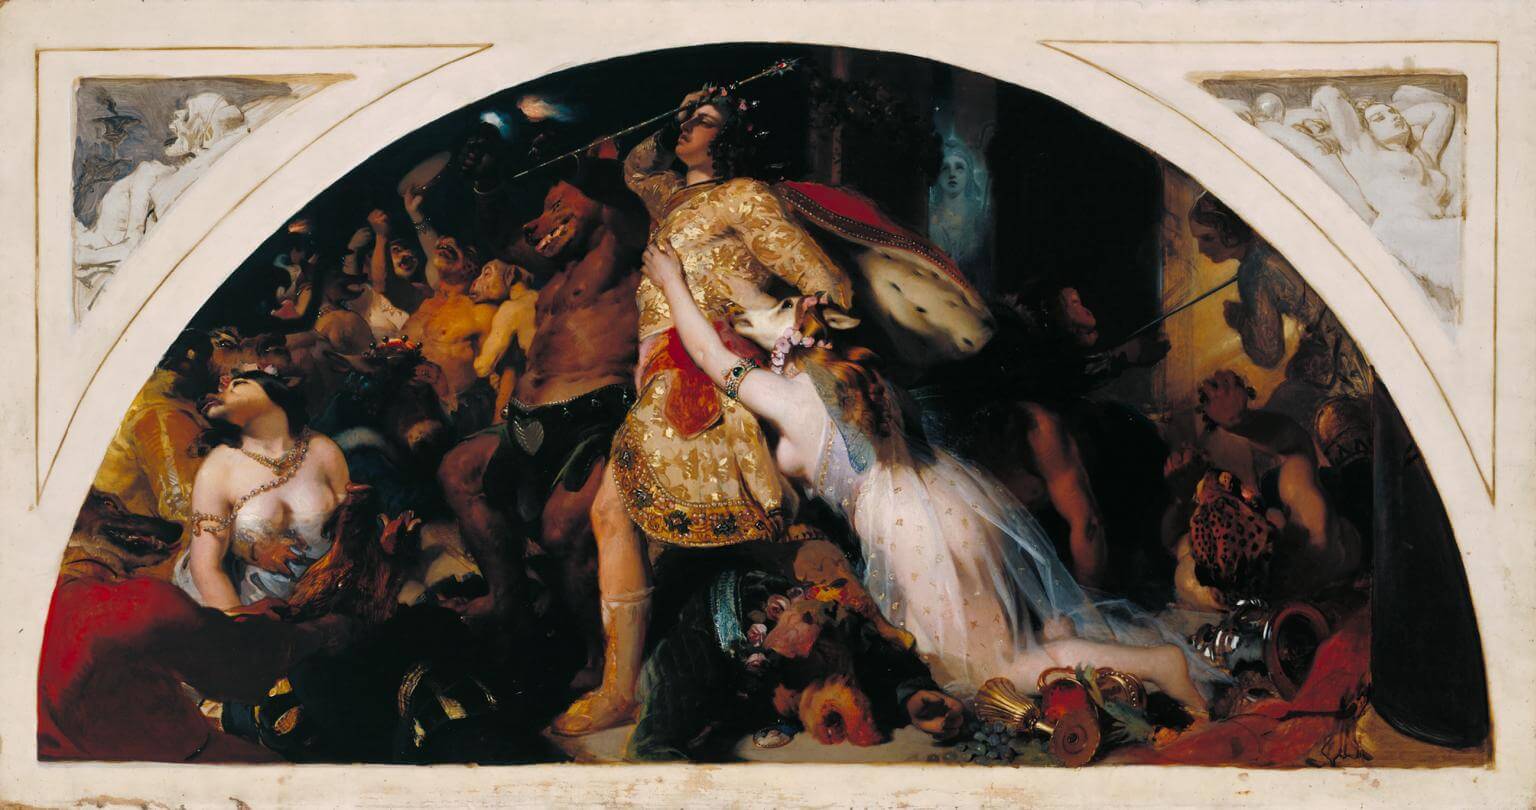 La derrota de Comus, por Sir Edwin Henry Landseer, 1843 (Tate)